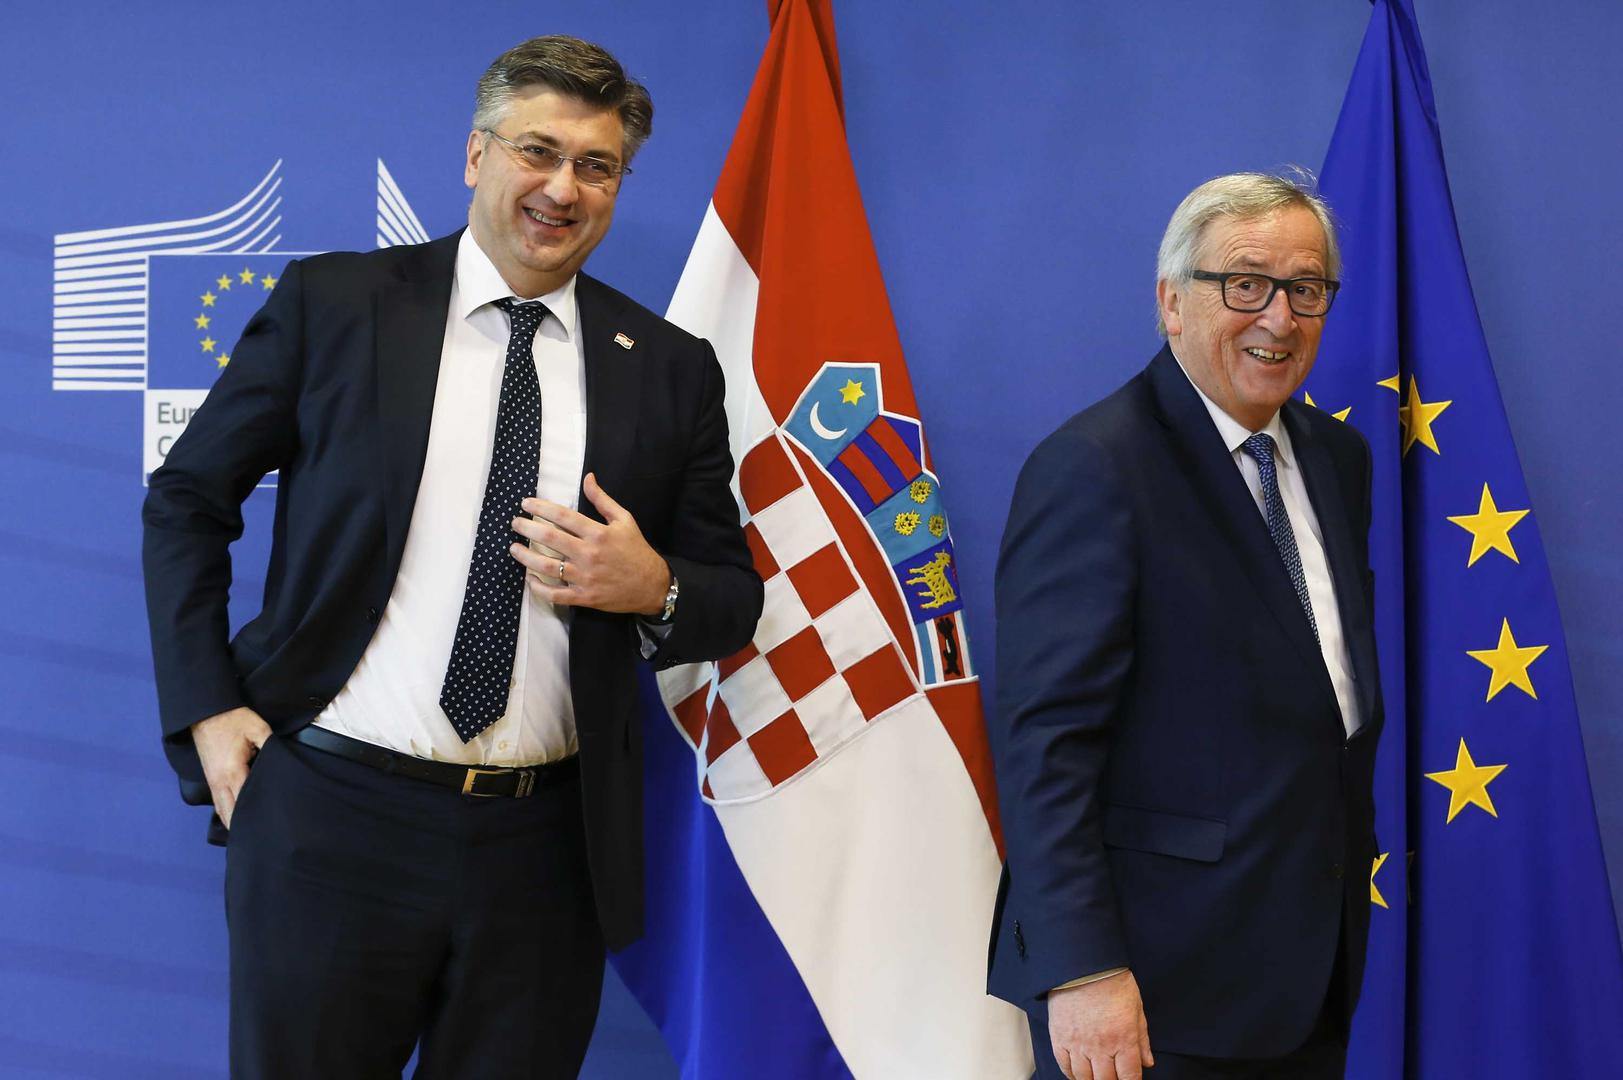 Hrvatski premijer i predsjednik Europske komisije konzultiraju se uoči početka sastanka Europskog vijeća u Bruxellesu.